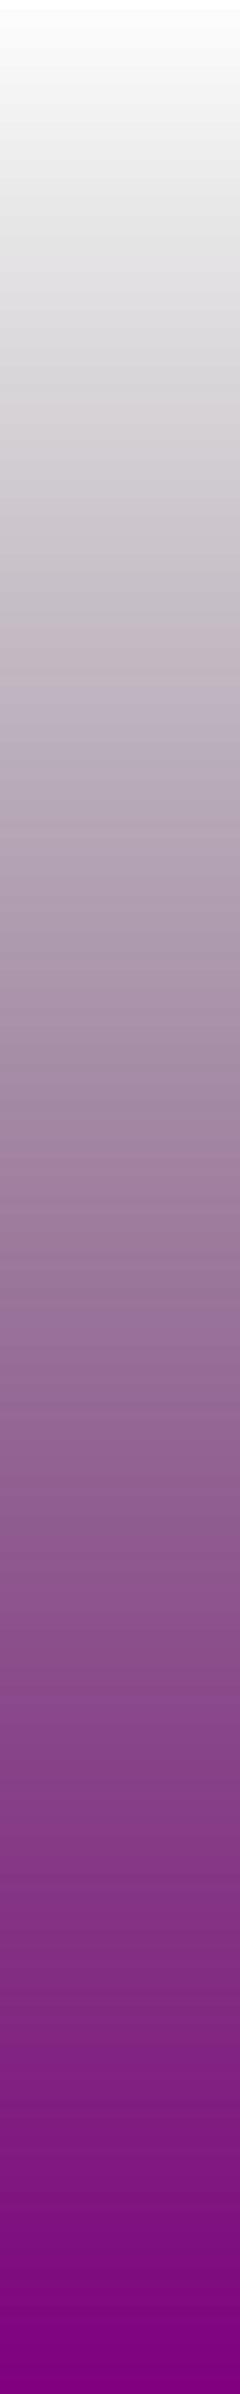 ws-gradient-purple png transparent